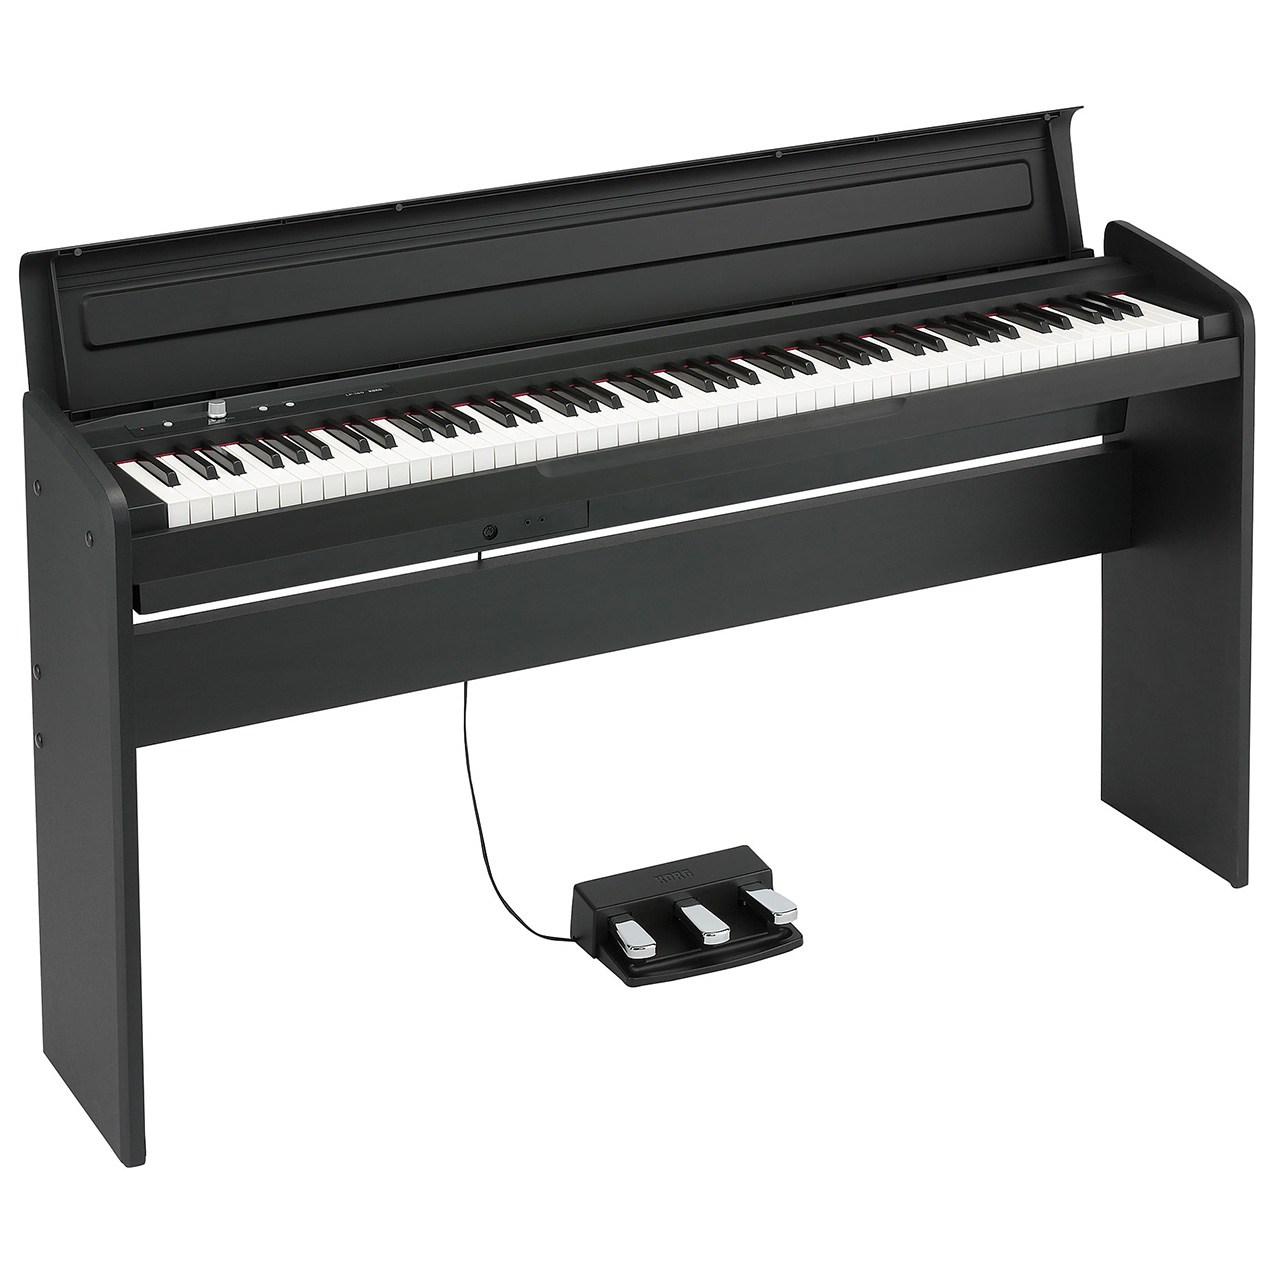 پیانو دیجیتال کرگ مدل LP-180